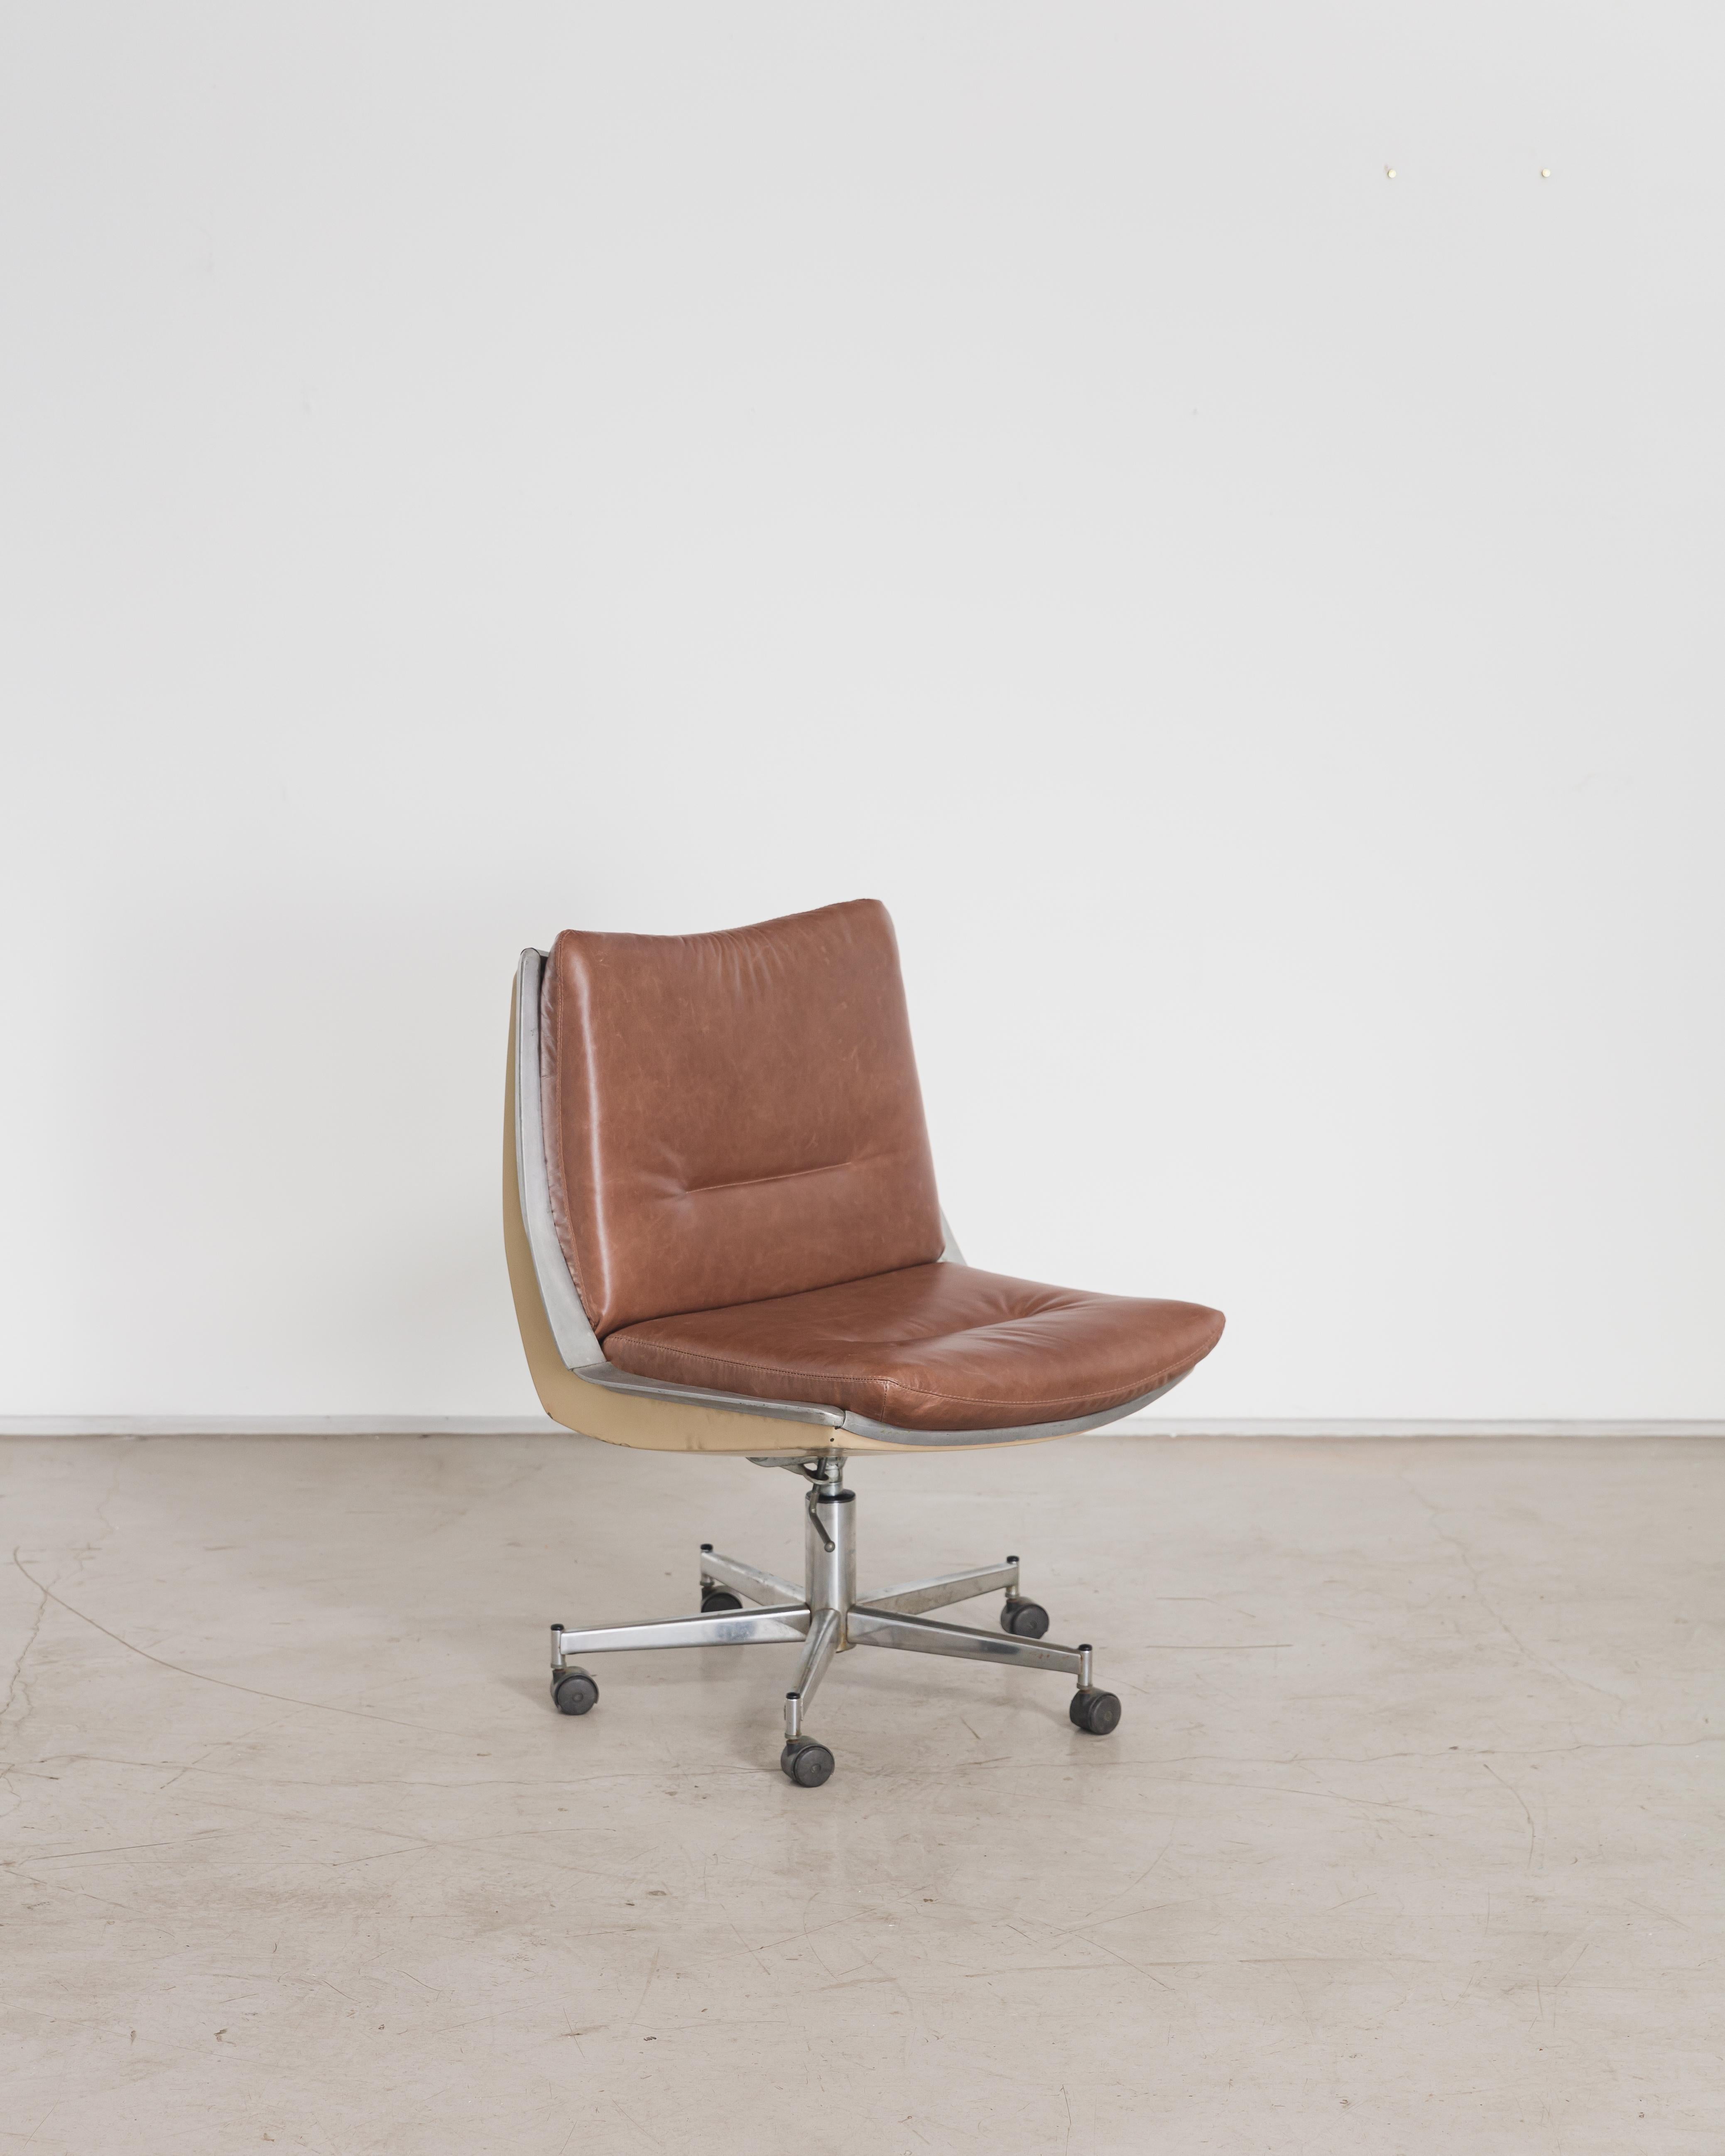 Créée par Jorge Zalszupin (1922-2020) et son équipe de designers, la chaise Commander a été conçue pour répondre au marché croissant du mobilier de bureau. Le premier modèle a été développé entre 1972 et 1973 et était équipé de roulettes ; plus